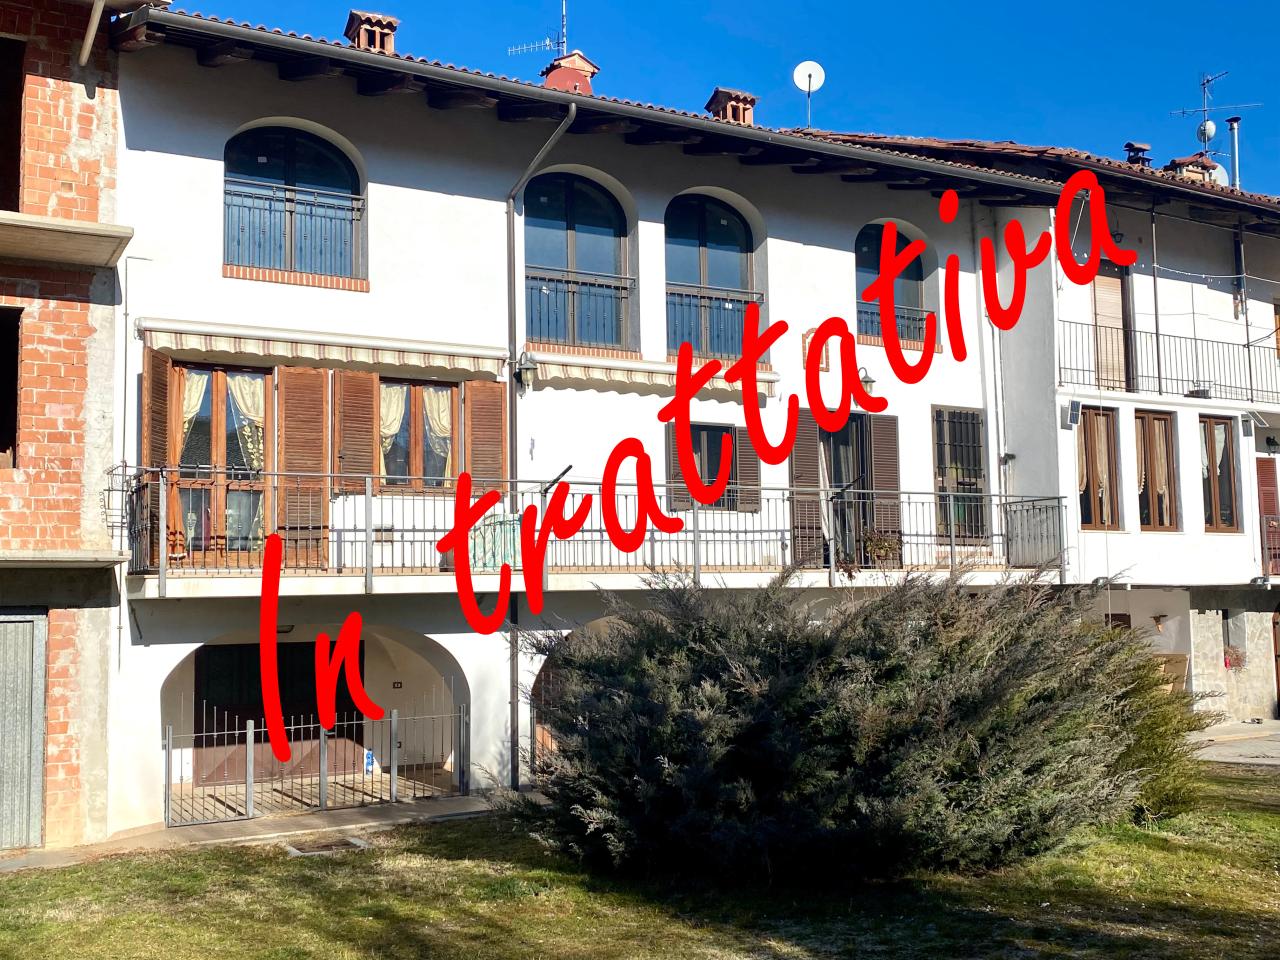 Villa a schiera in vendita a Niella Tanaro